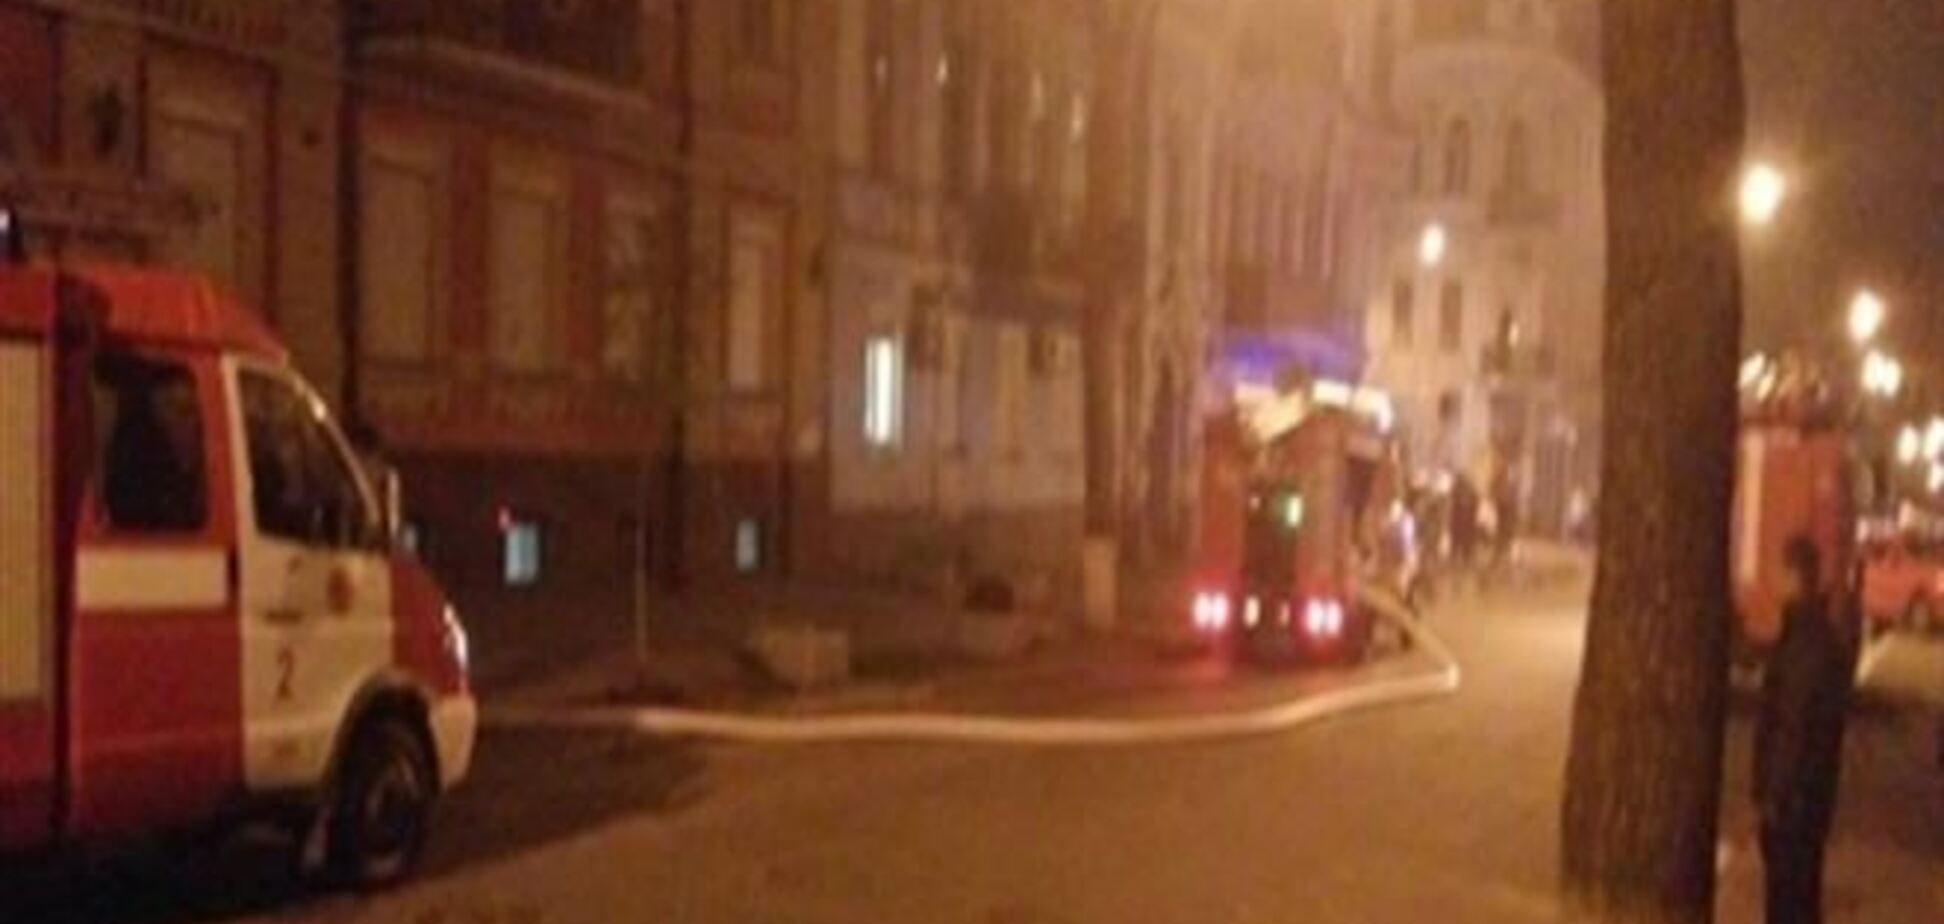 Симоненко: офіс КПУ підпалили представники виконавчої влади та коаліції ВР